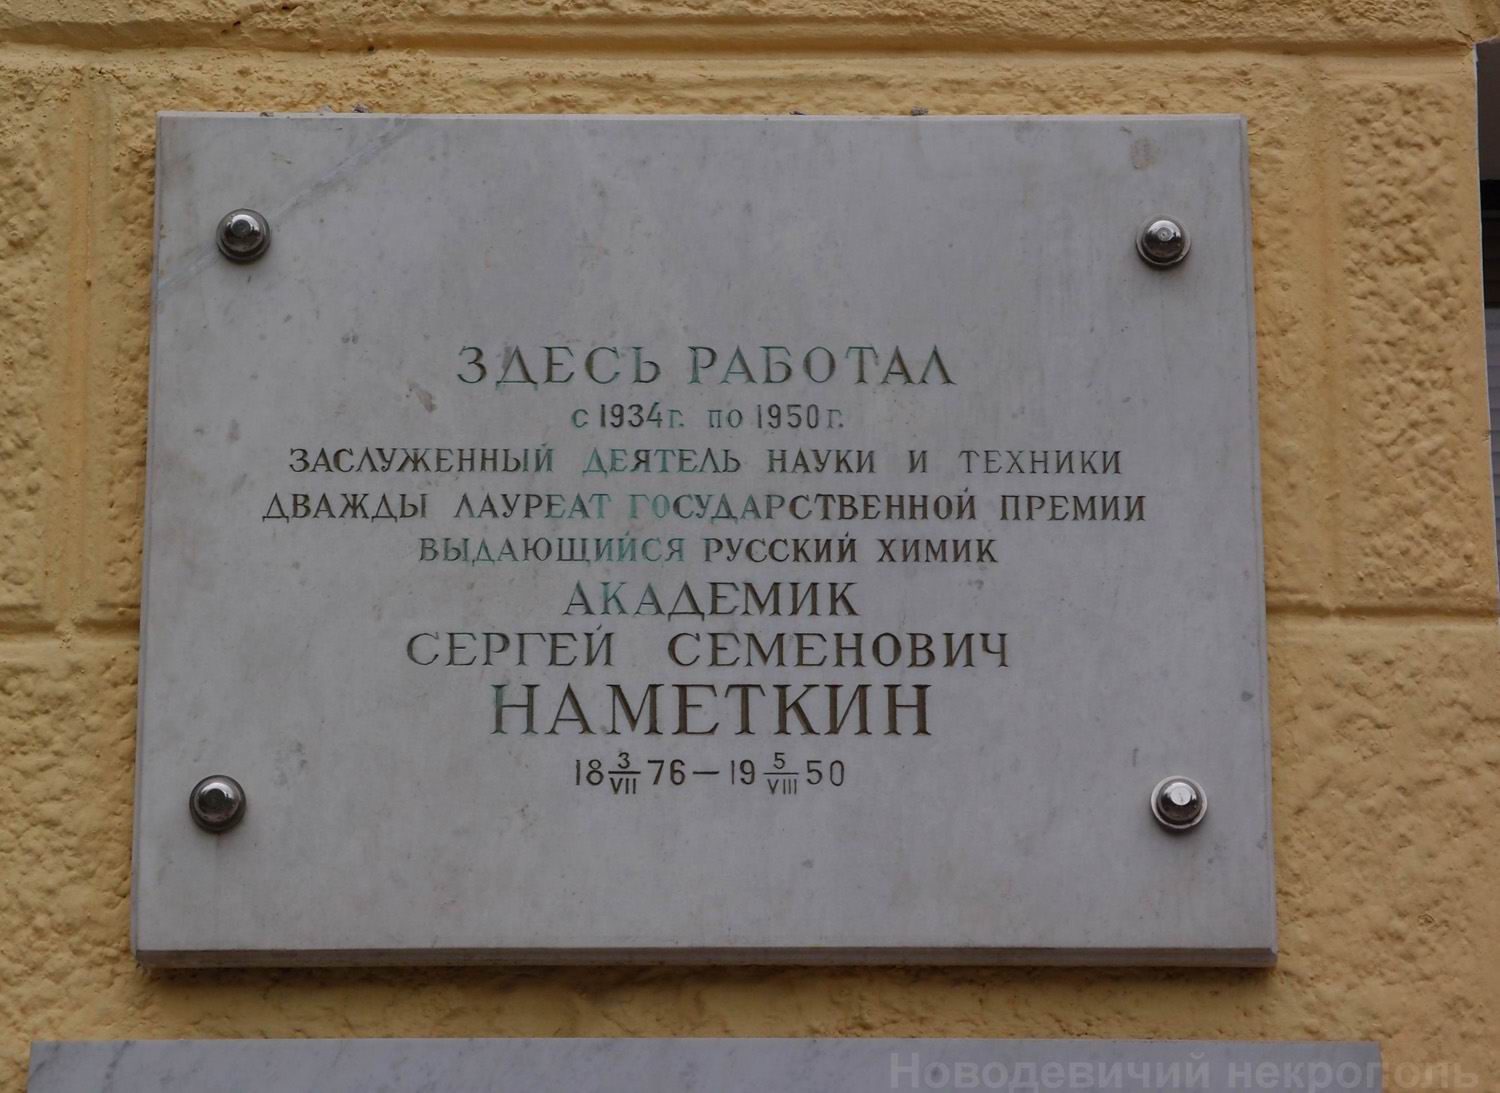 Мемориальная доска Намёткину С.С. (1876–1950), на Ленинском проспекте, дом 29, строение 2 (со стороны улицы Стасовой).